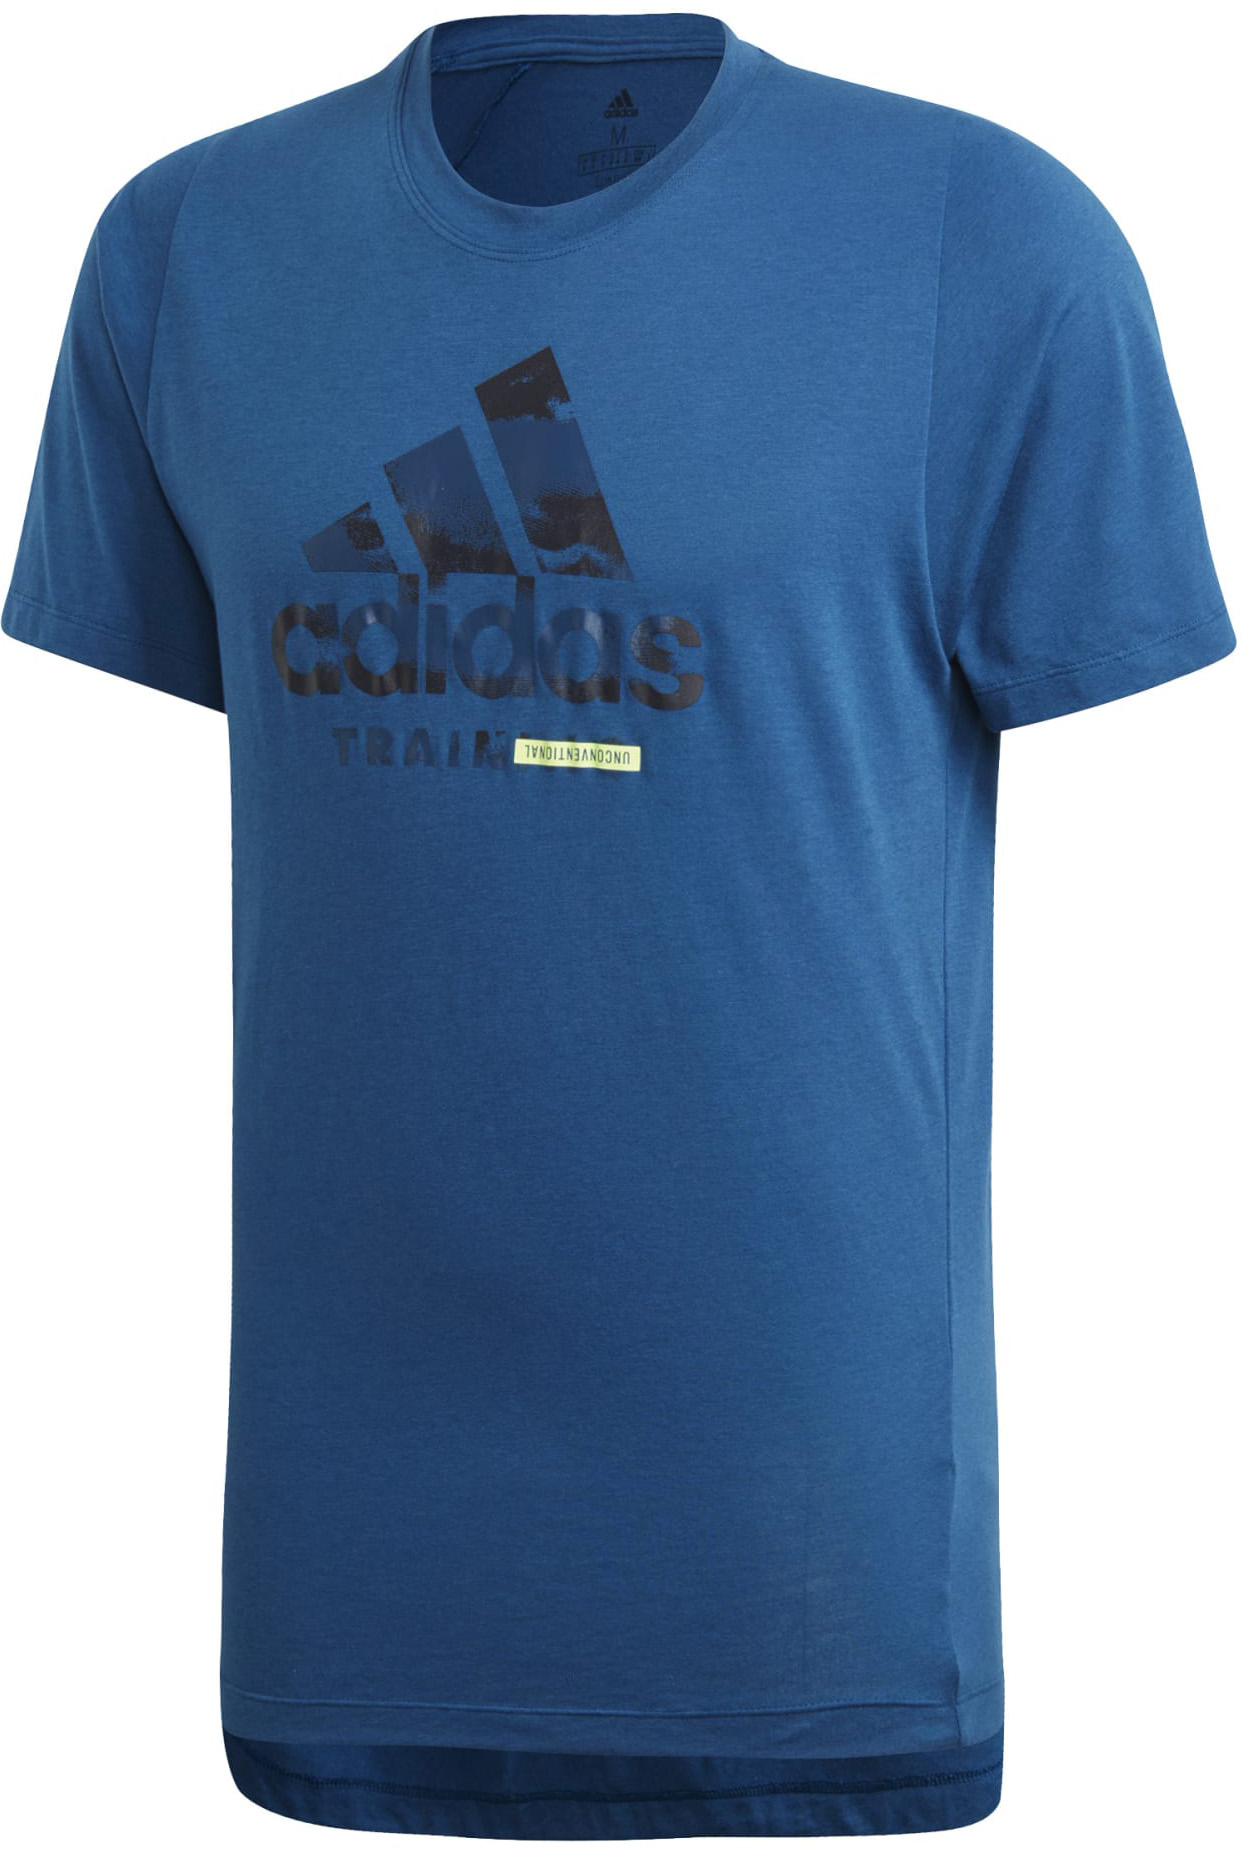 adidas Freelift Tee Logo T-shirt 497 S Rövid ujjú póló